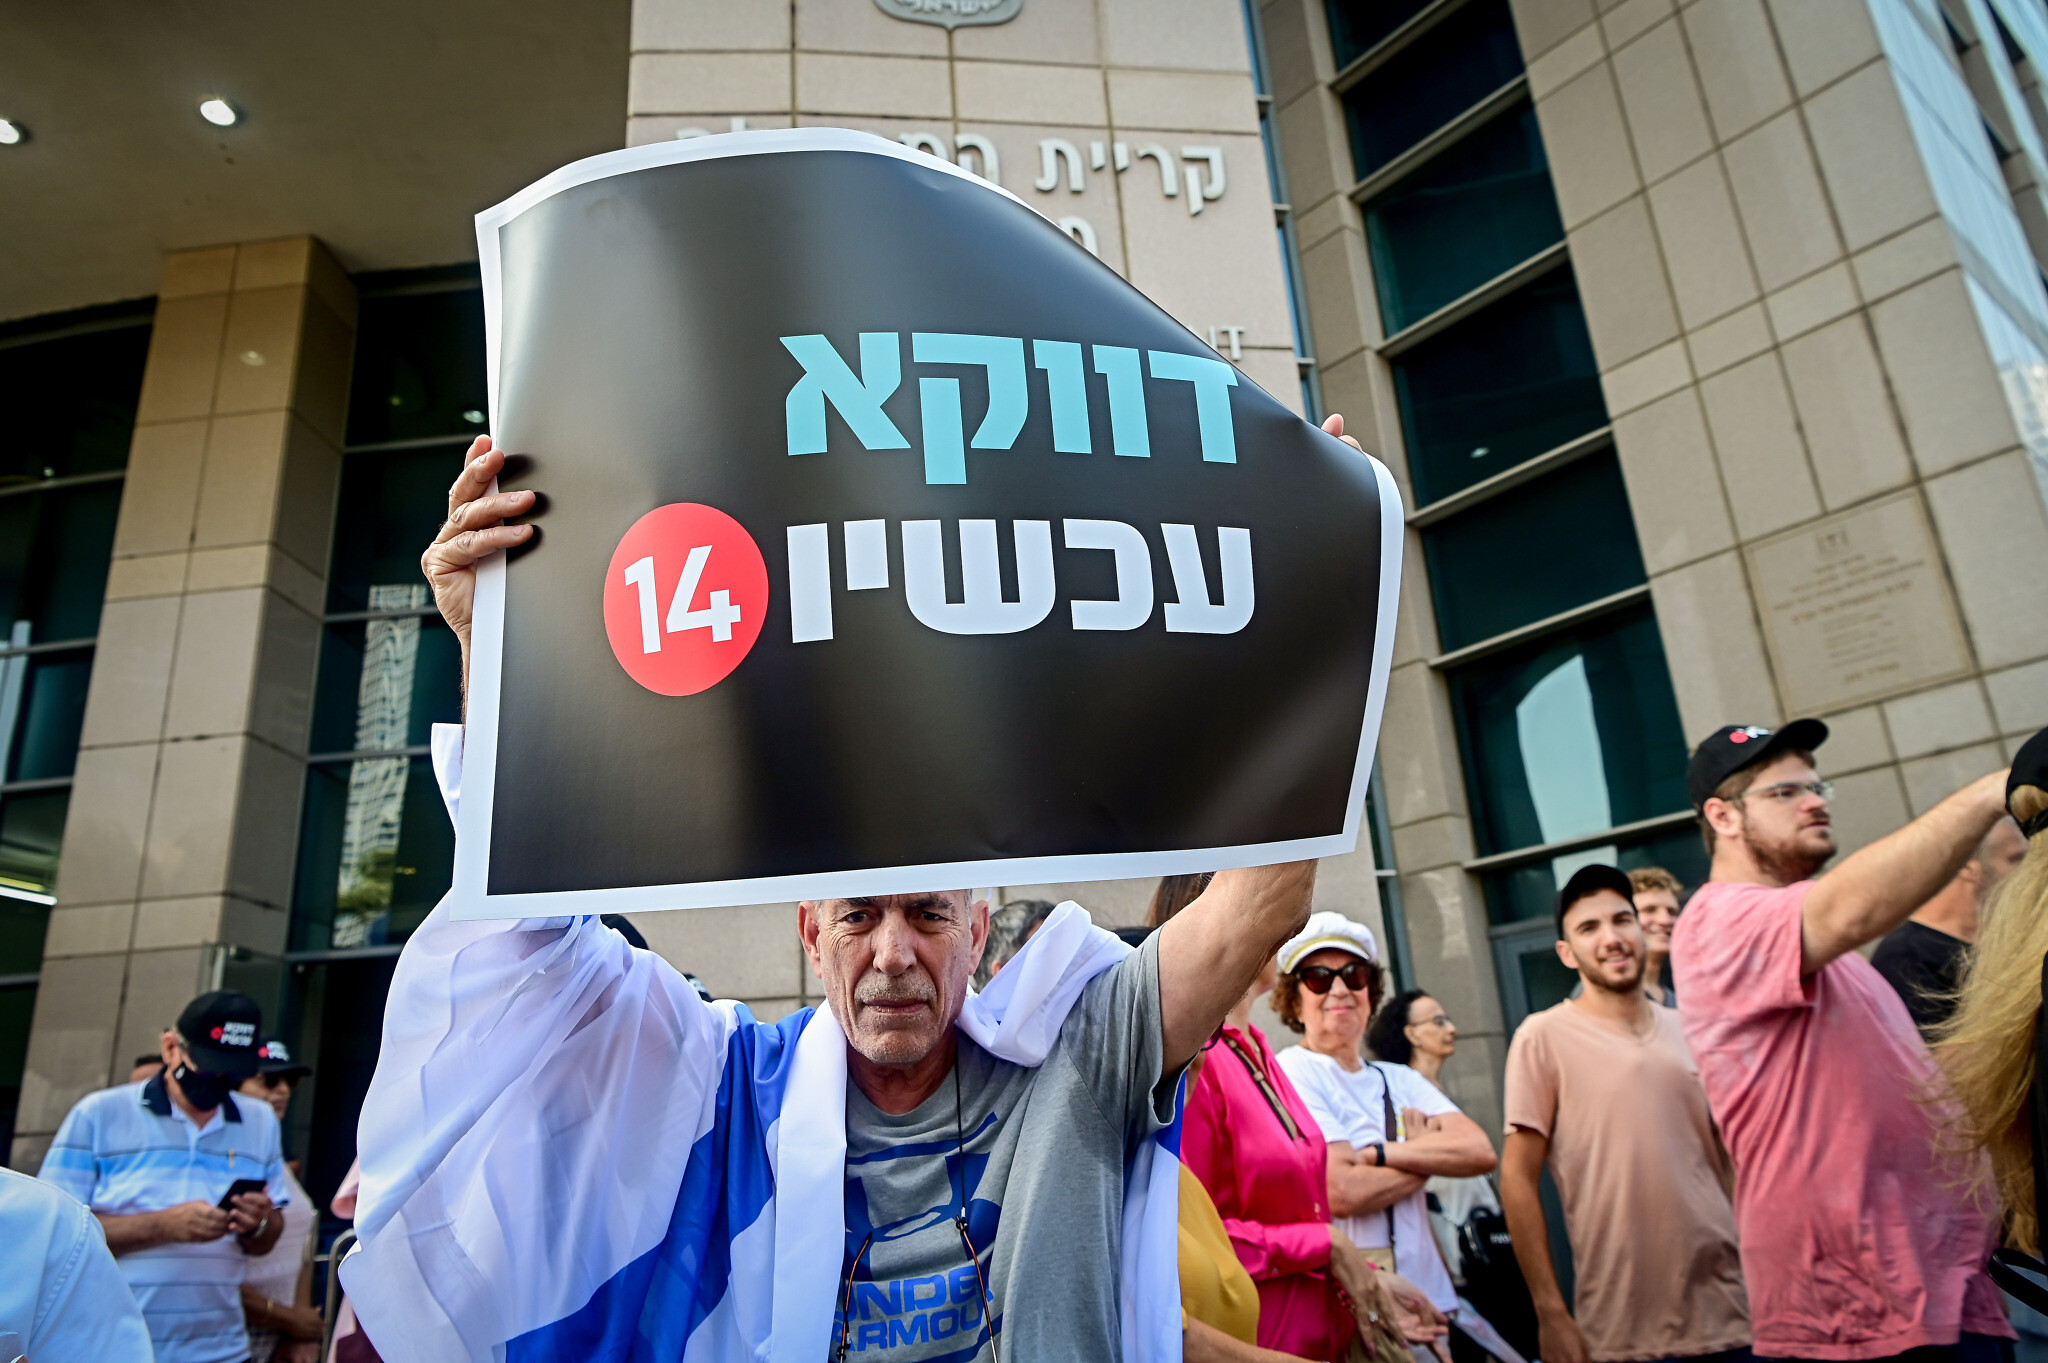 Des employés et des partisans de la Quatorzième chaîne protestent contre le Premier ministre israélien Yair Lapid devant le complexe gouvernemental de Tel Aviv, le 11 octobre 2022. (Crédit : Avshalom Sassoni/Flash90)